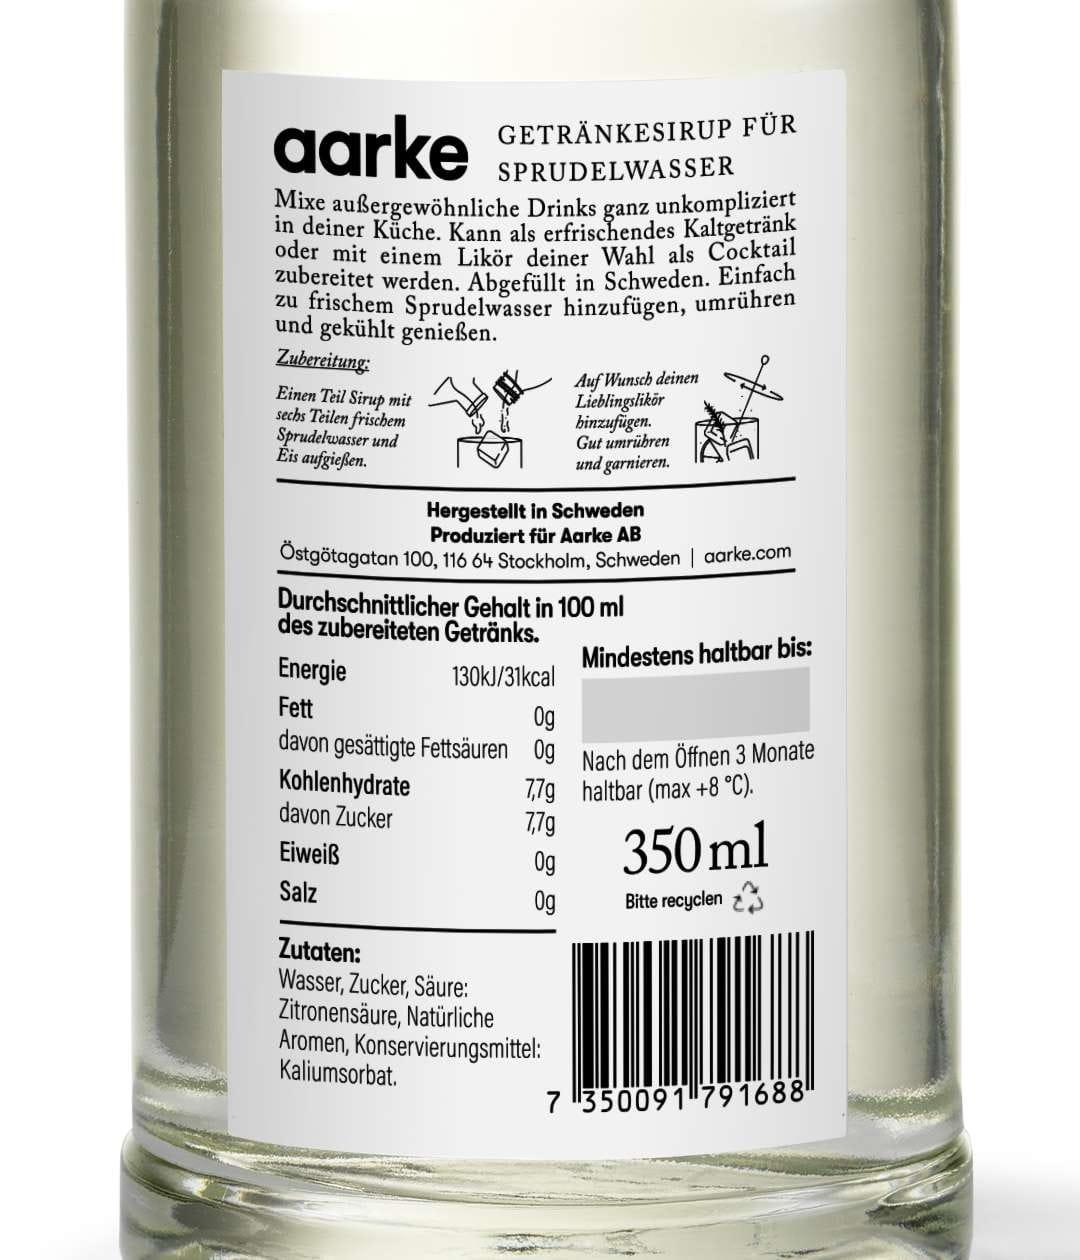 Aarke Drankmixer, yuzu basilicum